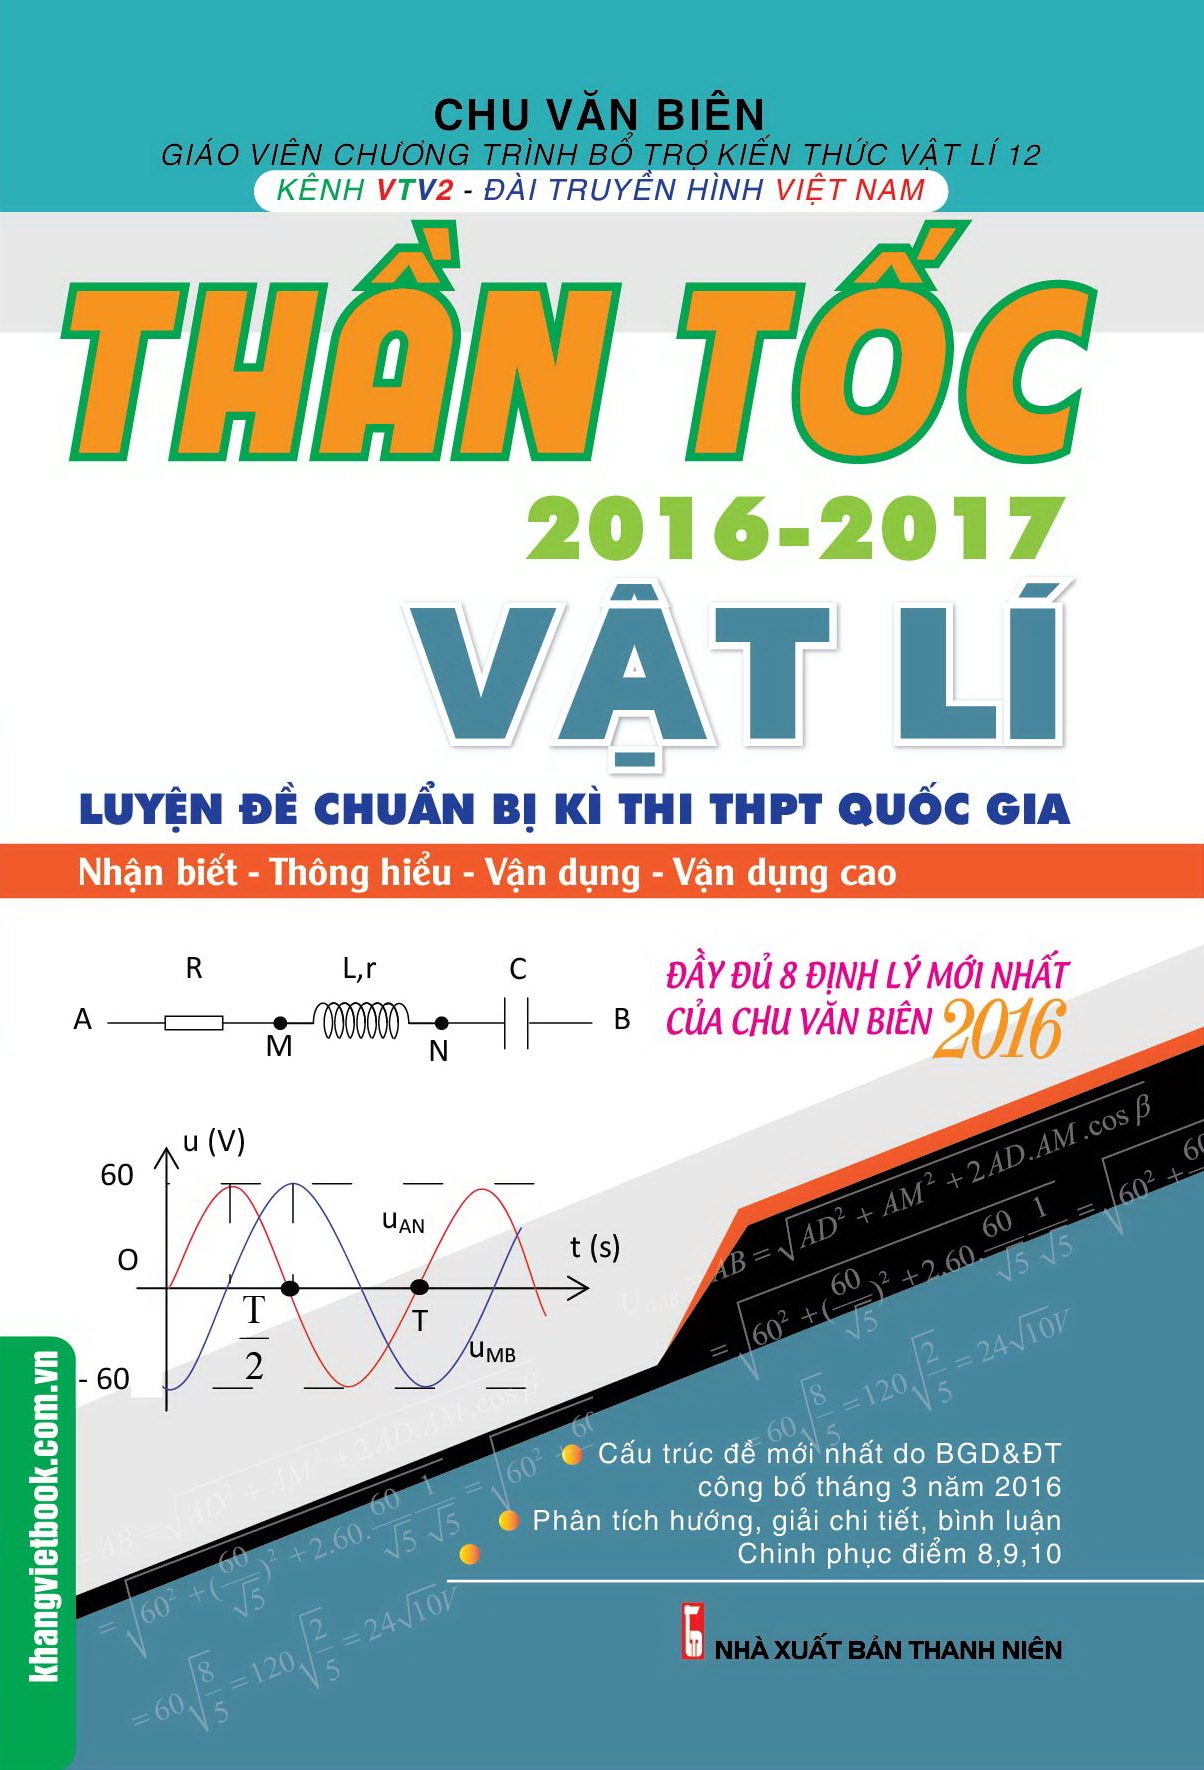 than-toc-luyen-de-chuan-bi-ki-thi-thpt-quoc-gia-vat-ly-2016-2017